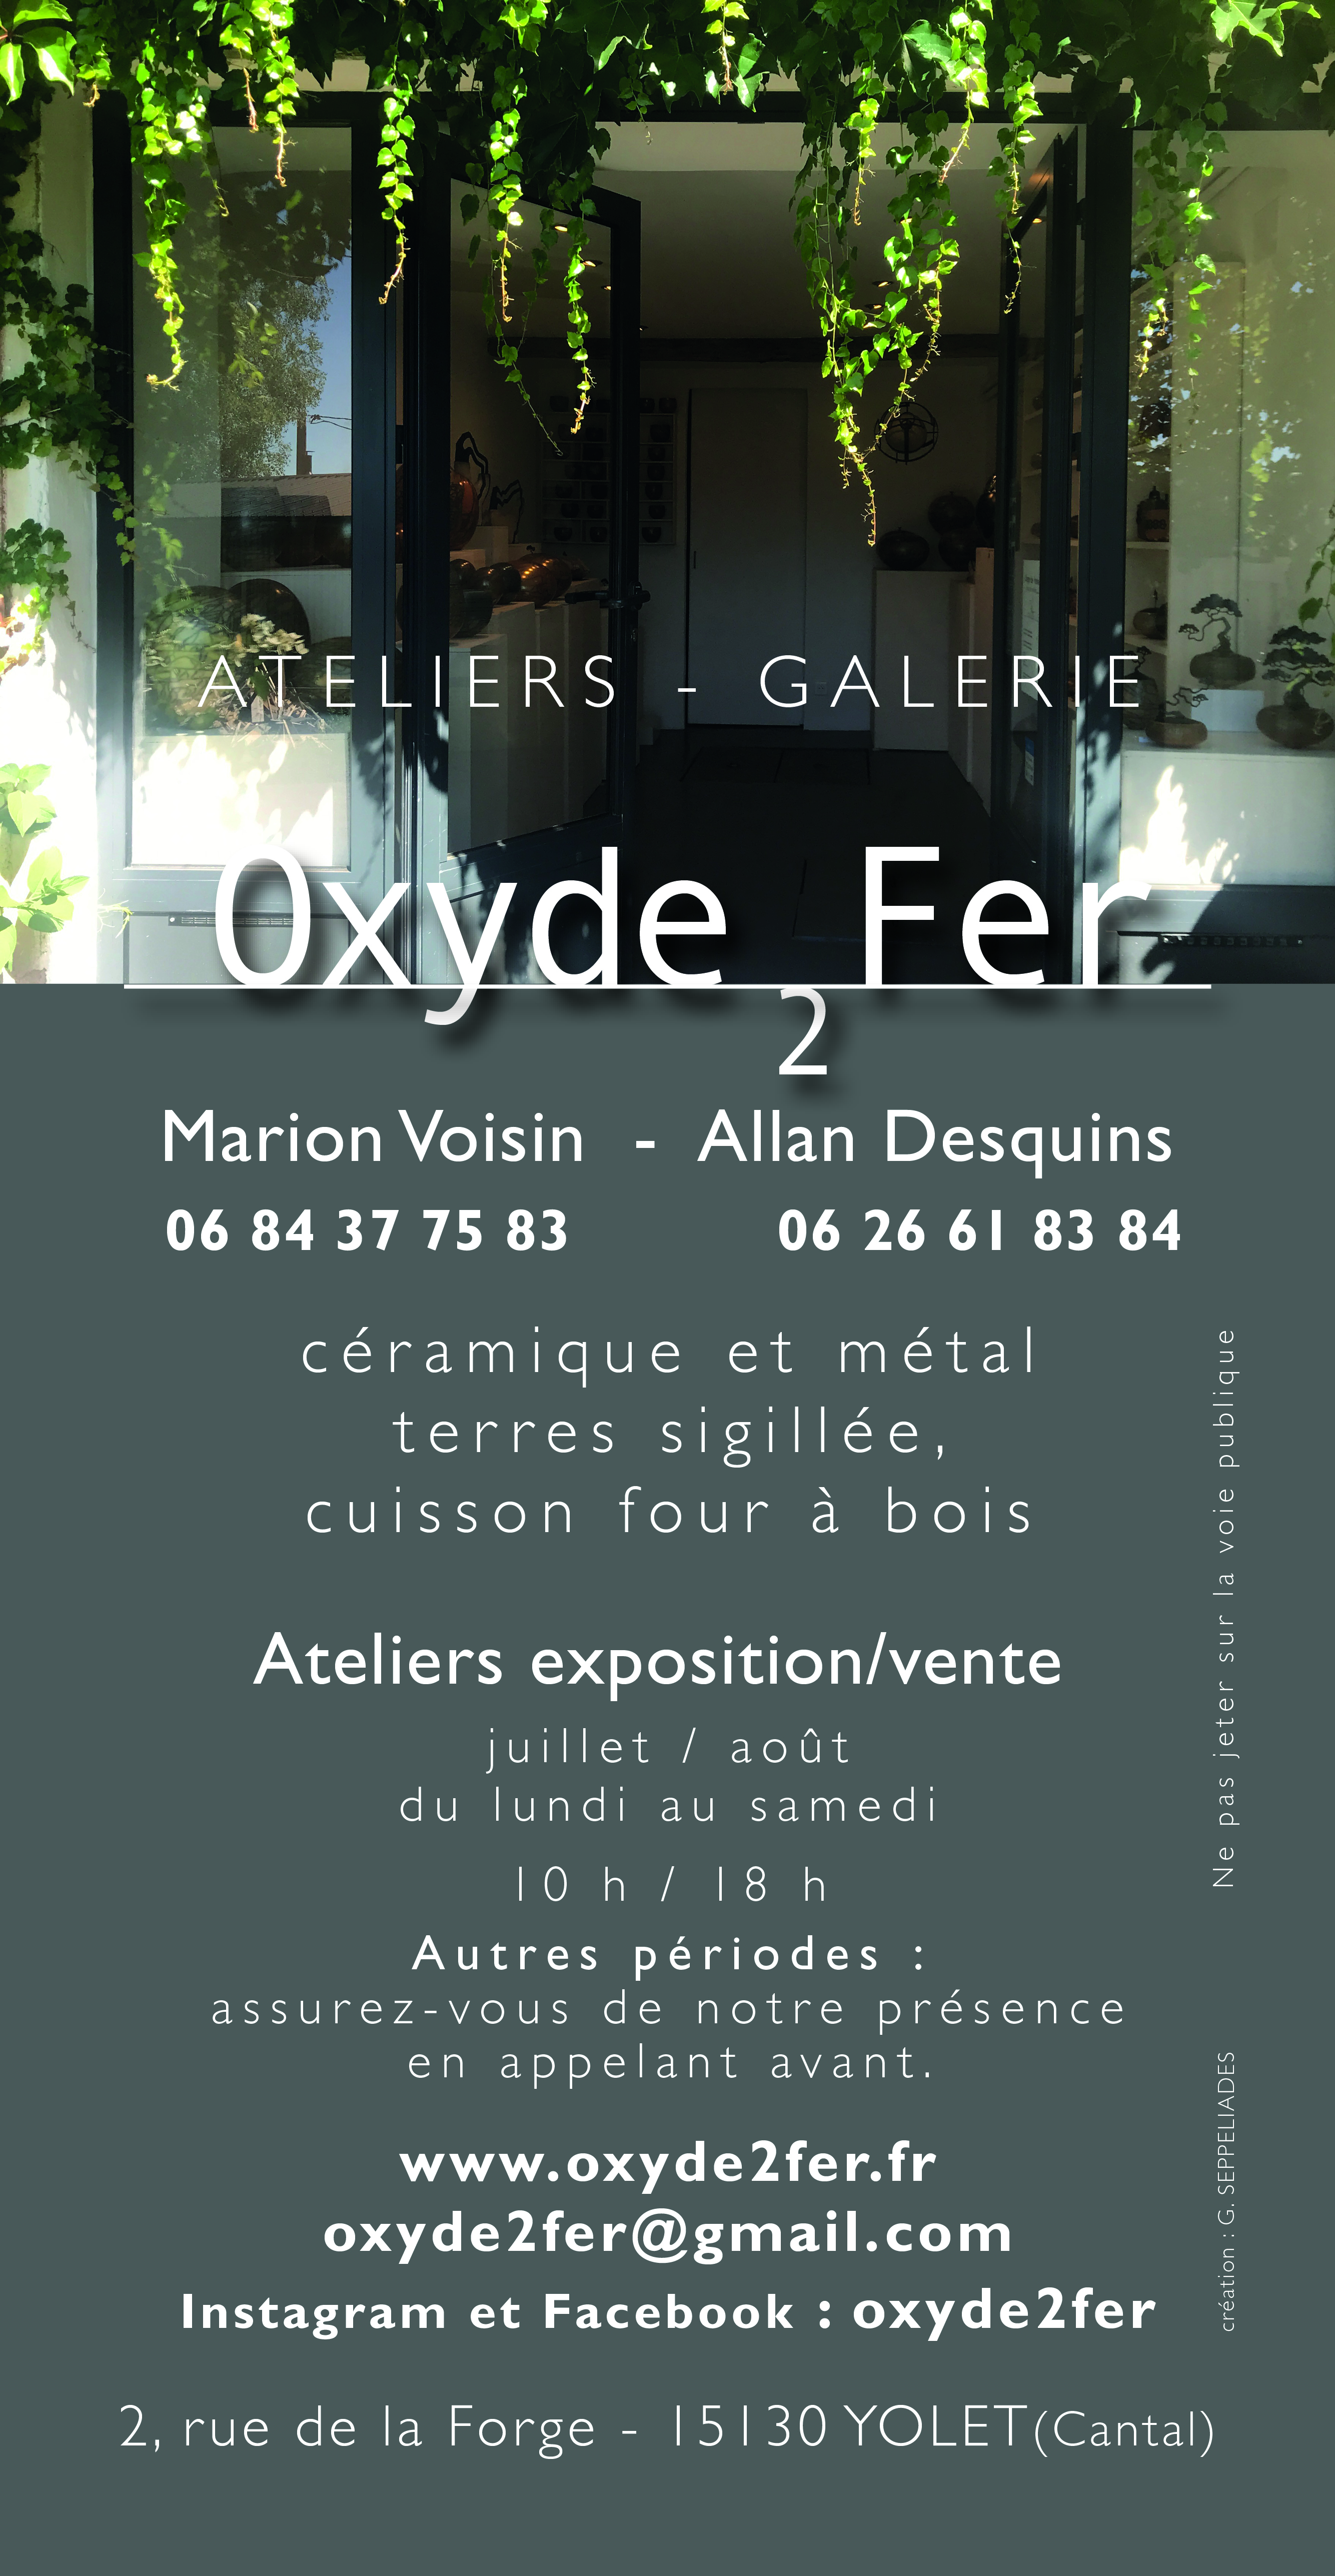 Oxyde 2 Fer - Ateliers, Galerie céramique et métal. Marion Voisin et Allan Desquins